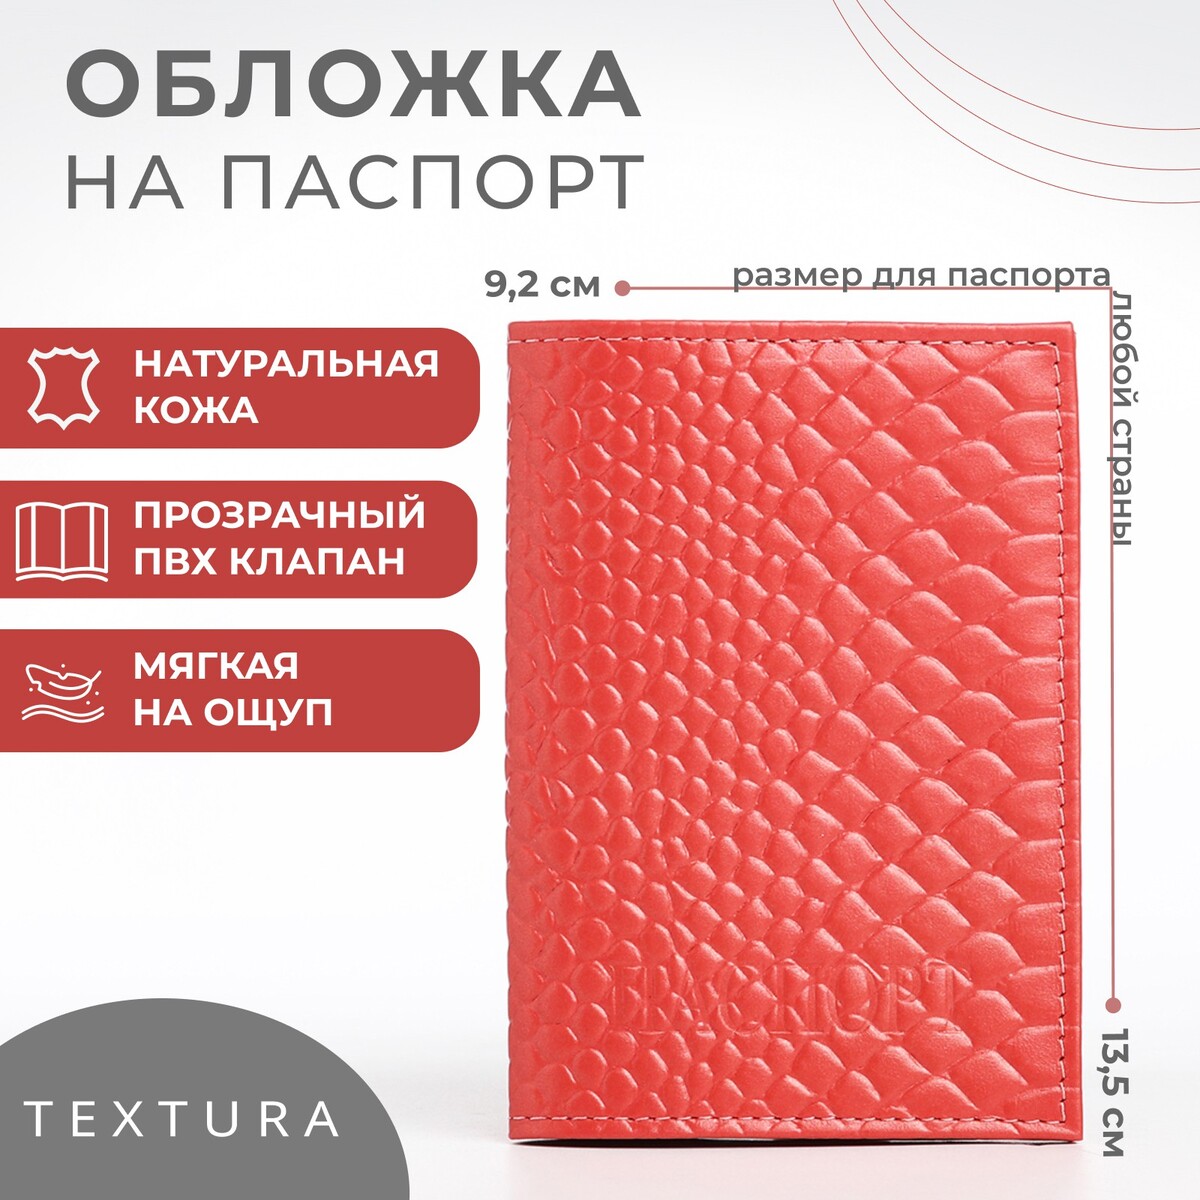 Обложка для паспорта textura, цвет чайной розы